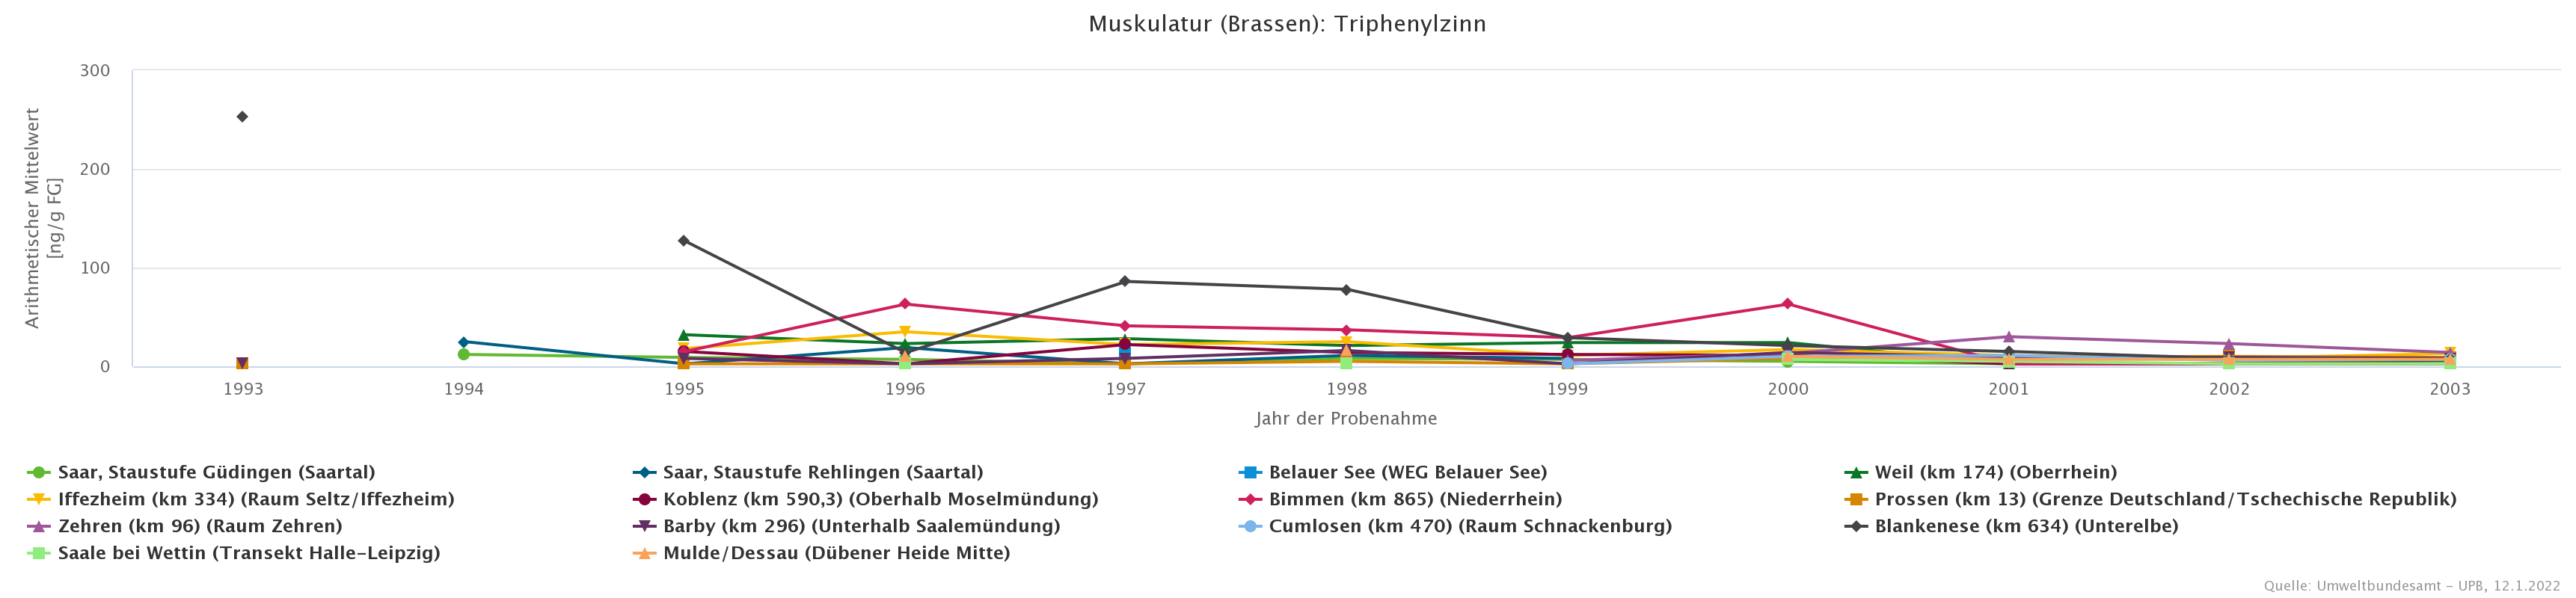 Abnehmende TPT-Gehalte von Brassen zwischen 1993 und 2003.